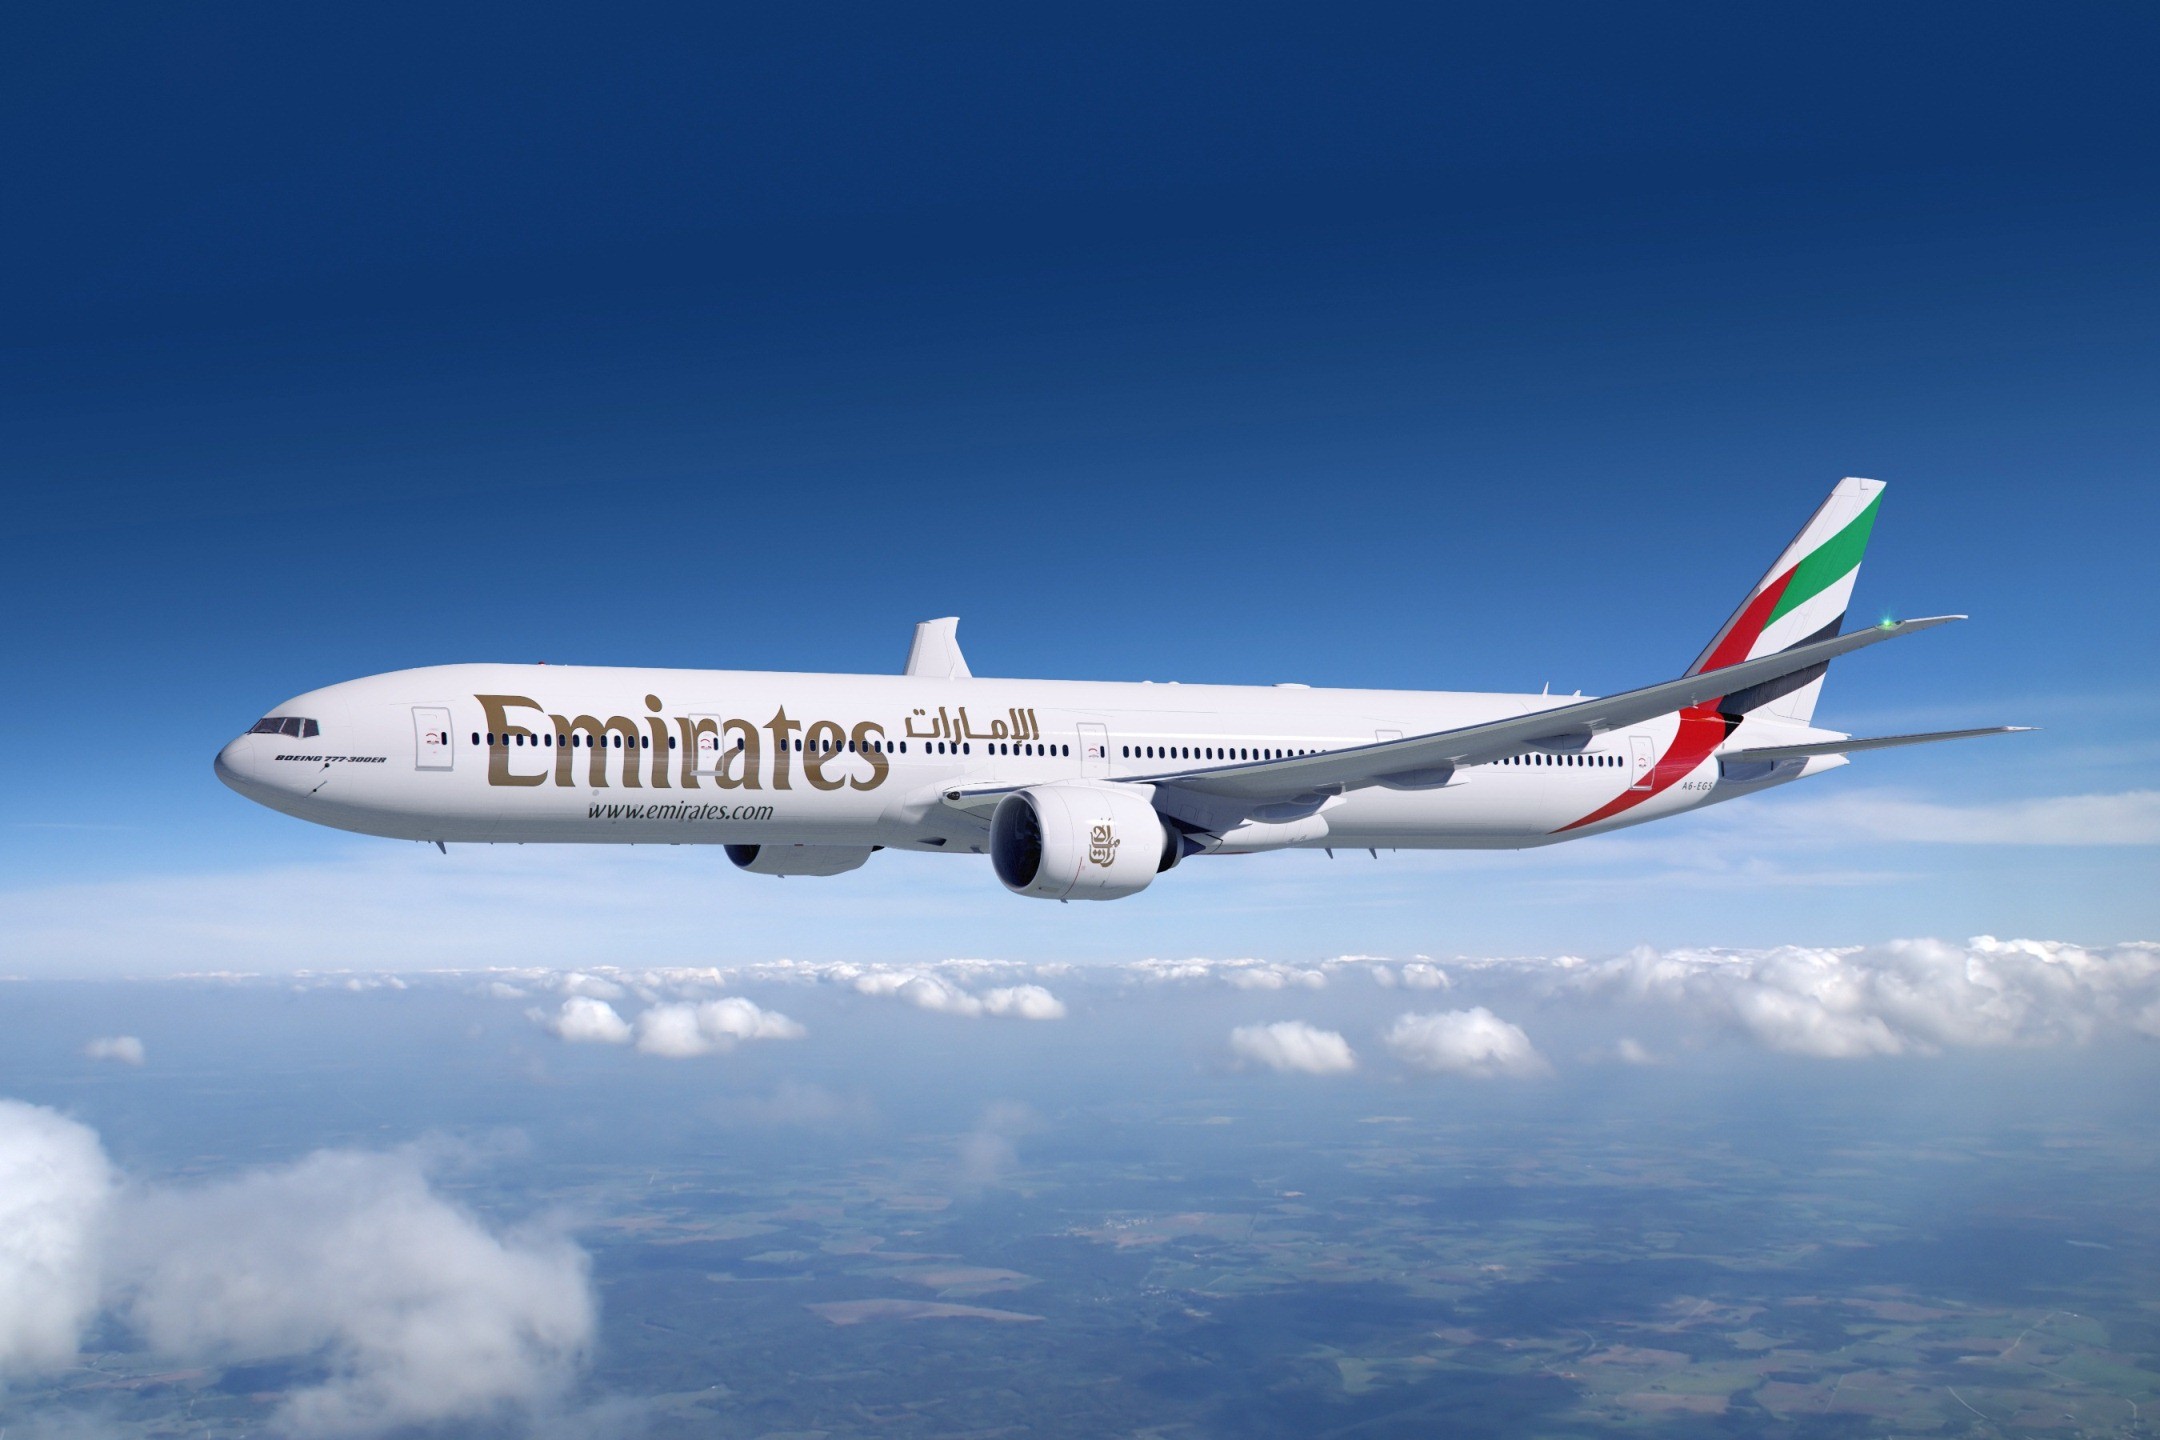 fond d'écran emirates hd,compagnie aérienne,avion,avion de ligne,aviation,avion